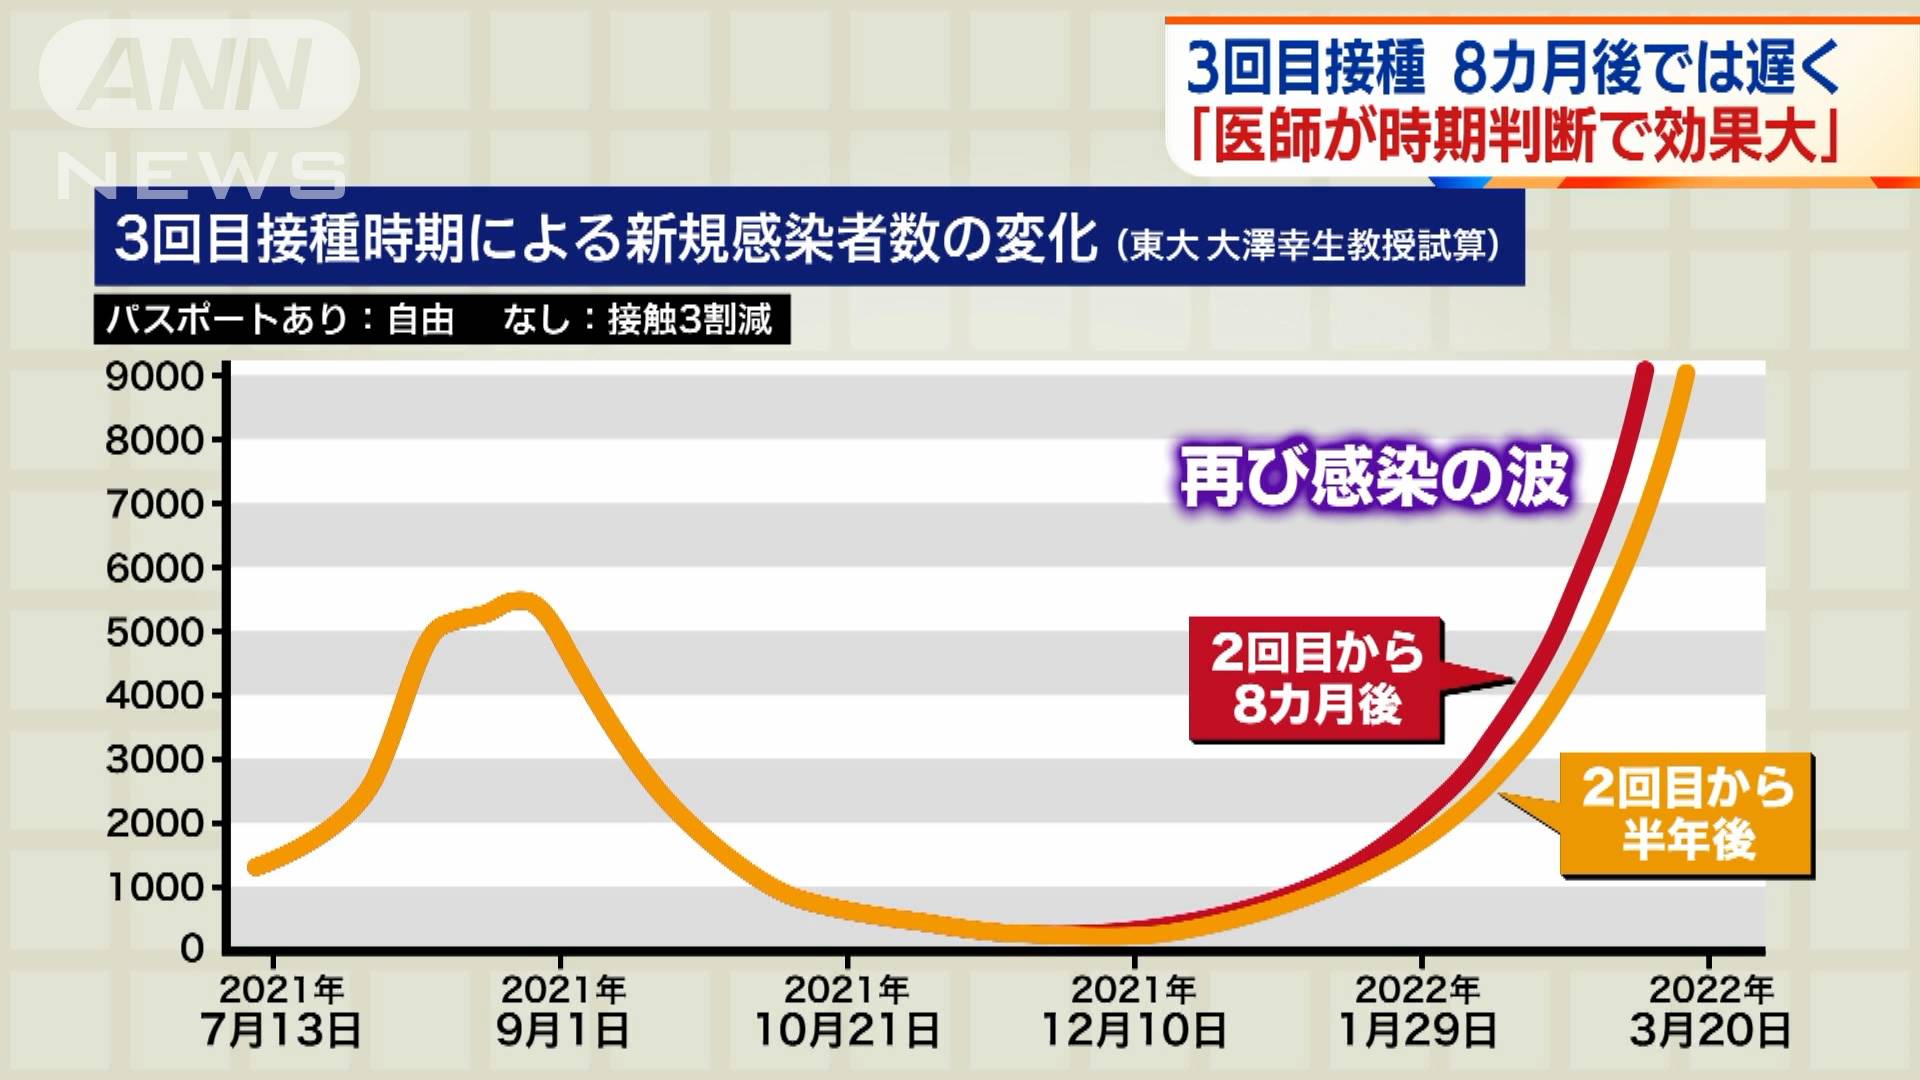 ワクチン3回目接種 8カ月後では遅く 感染再拡大も テレ朝news テレビ朝日のニュースサイト